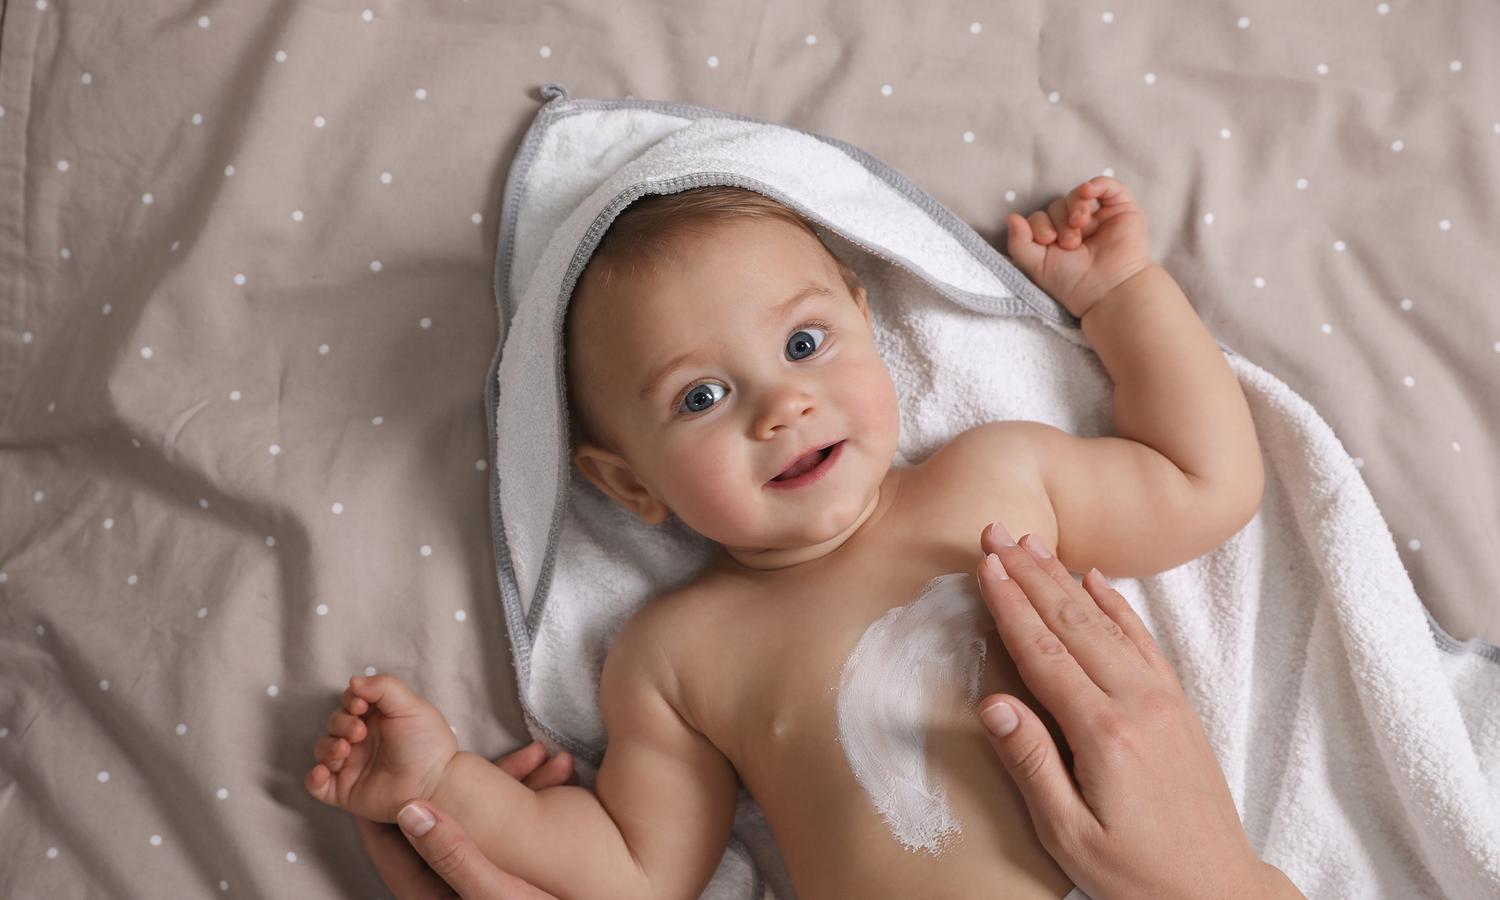 Baby liegt im Bademantel auf dem Rücken während eine Hand den Körper eincremt.